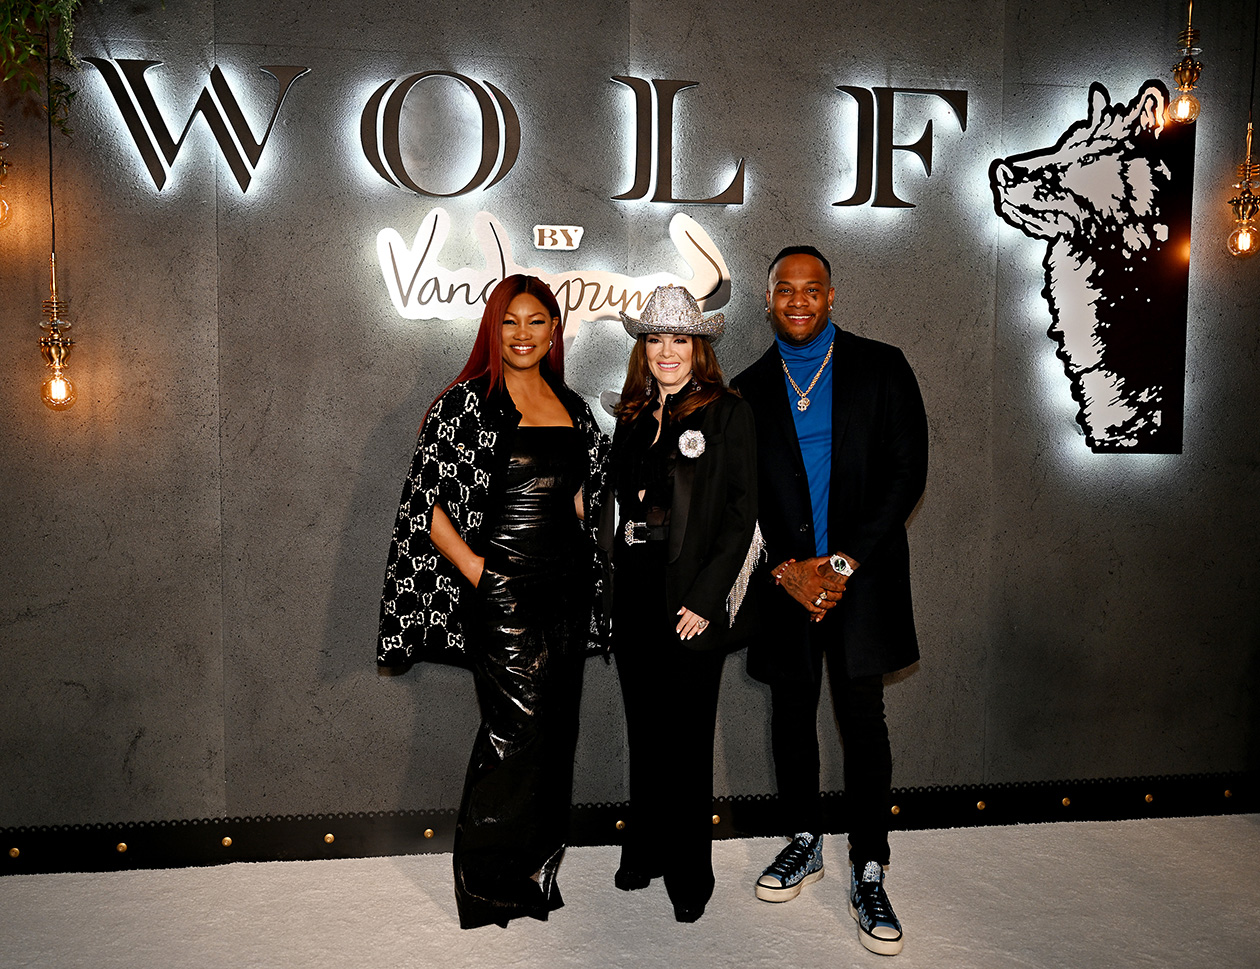 Wolf by Vanderpump at Harveys Lake Tahoe Grand Opening, Garcelle Beauvais, Lisa Vanderpump, Oliver Saunders